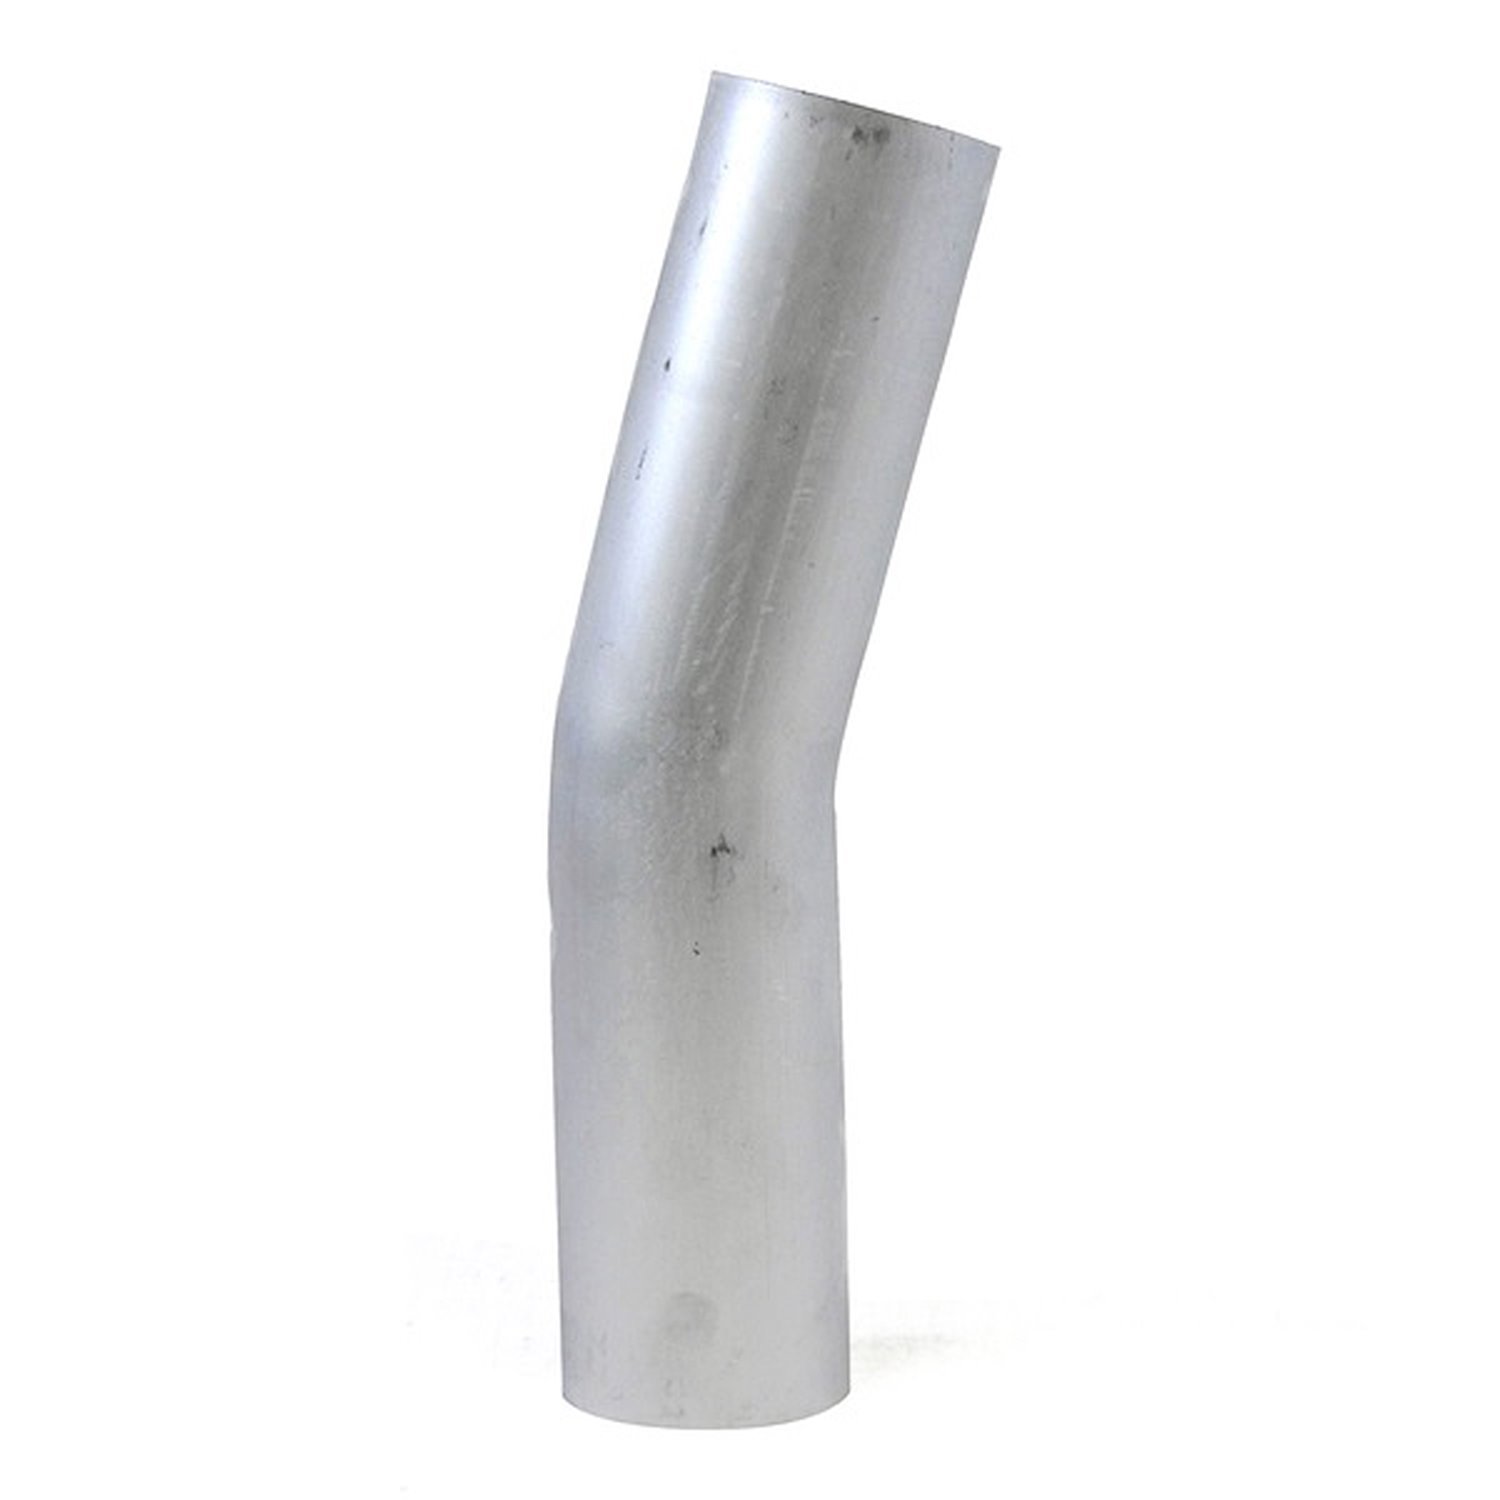 AT15-225-CLR-3 Aluminum Elbow Tube, 6061 Aluminum, 15-Degree Bend Elbow Tubing, 2-1/4 in. OD, Large Radius, 3 in. CLR